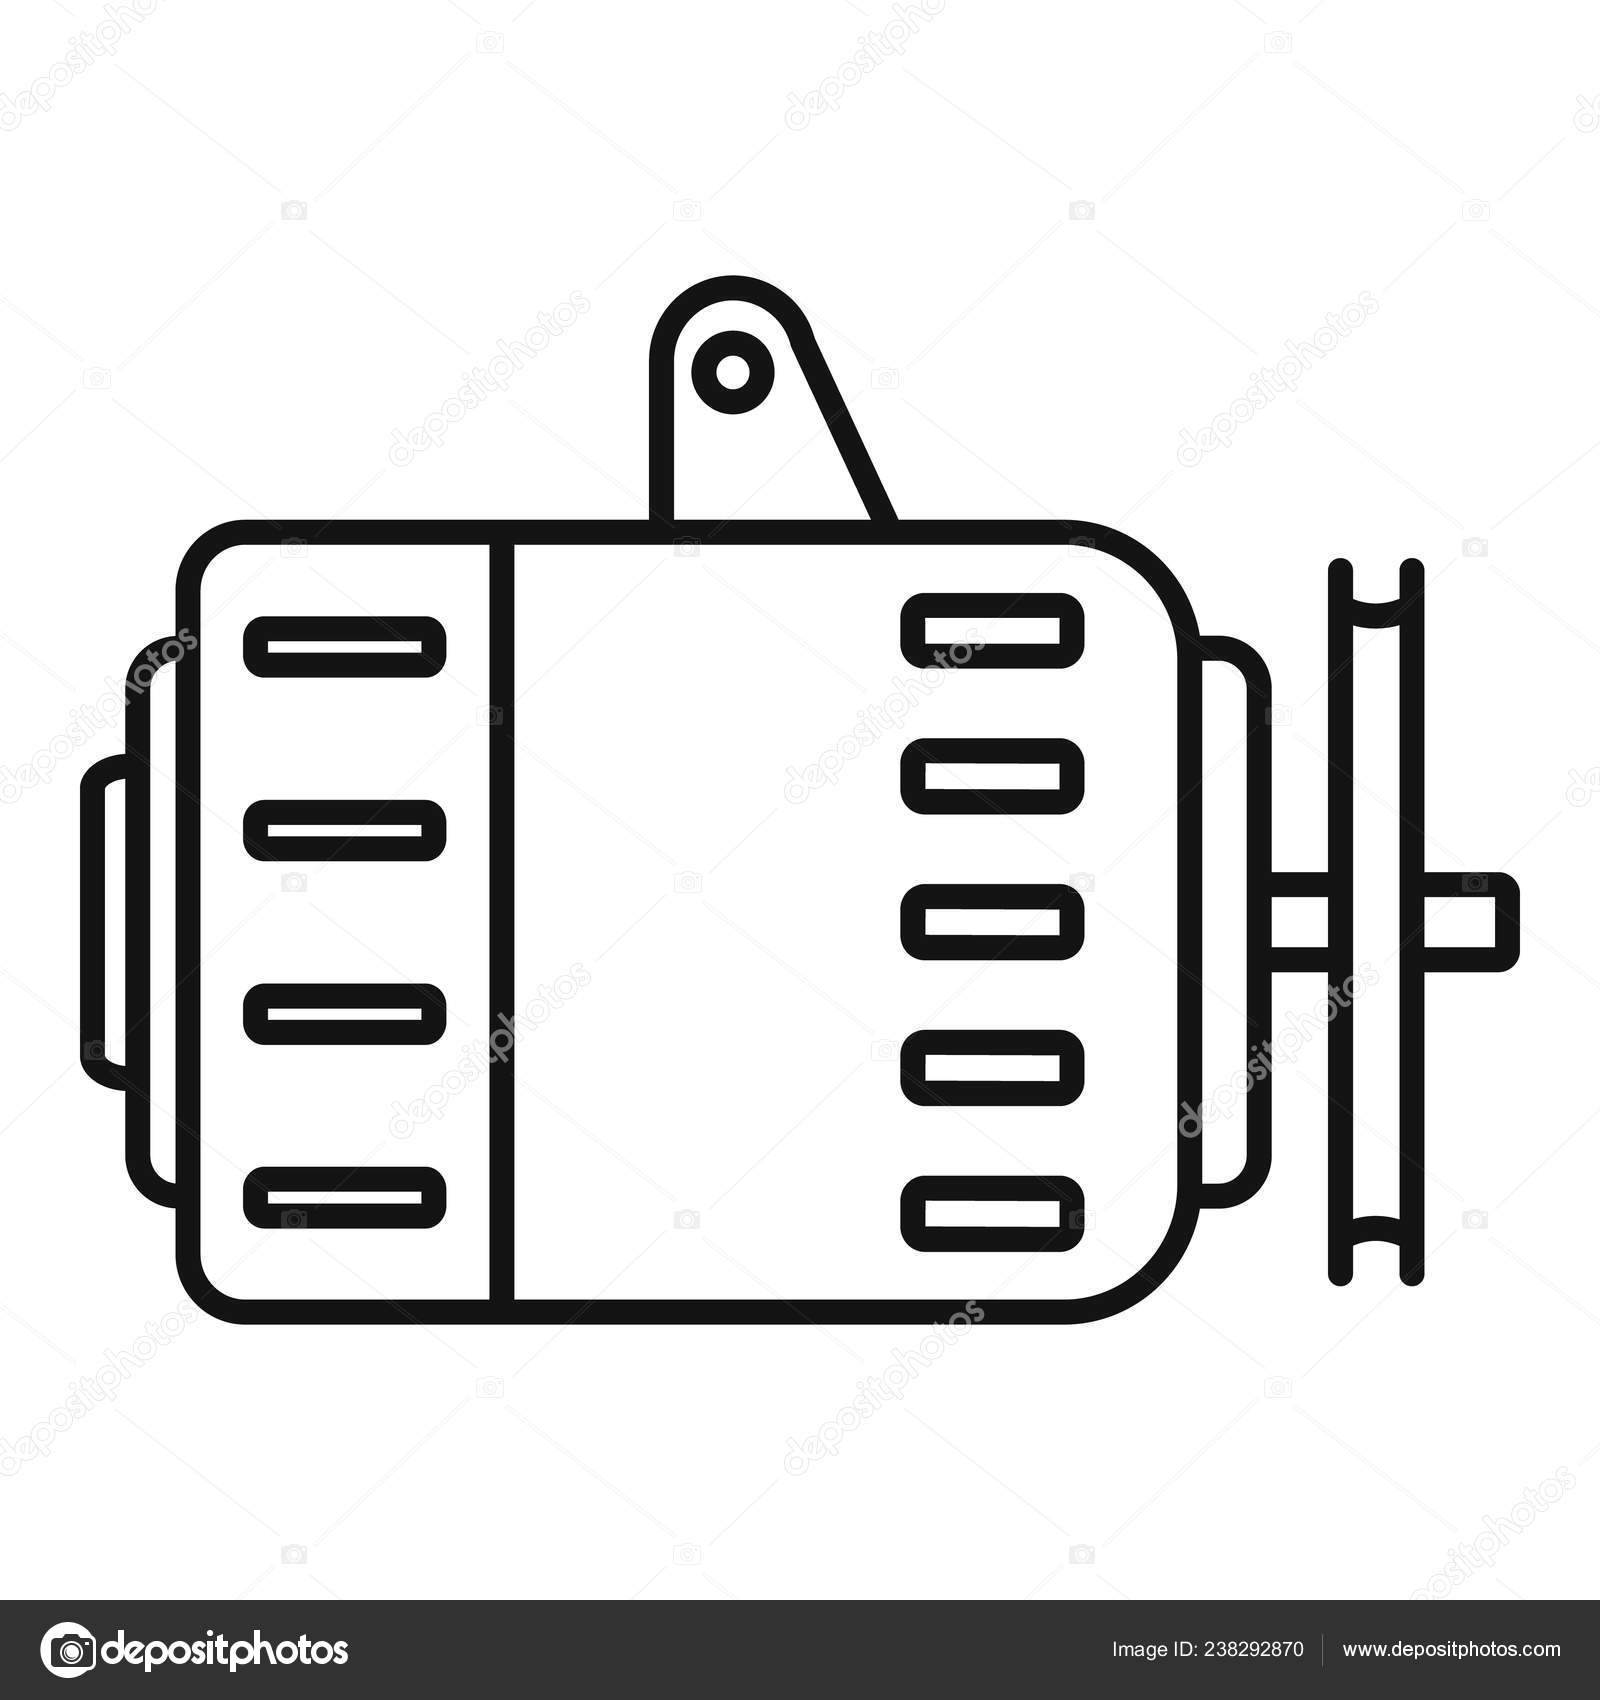 https://st4.depositphotos.com/14768666/23829/v/1600/depositphotos_238292870-stock-illustration-car-alternator-icon-outline-style.jpg